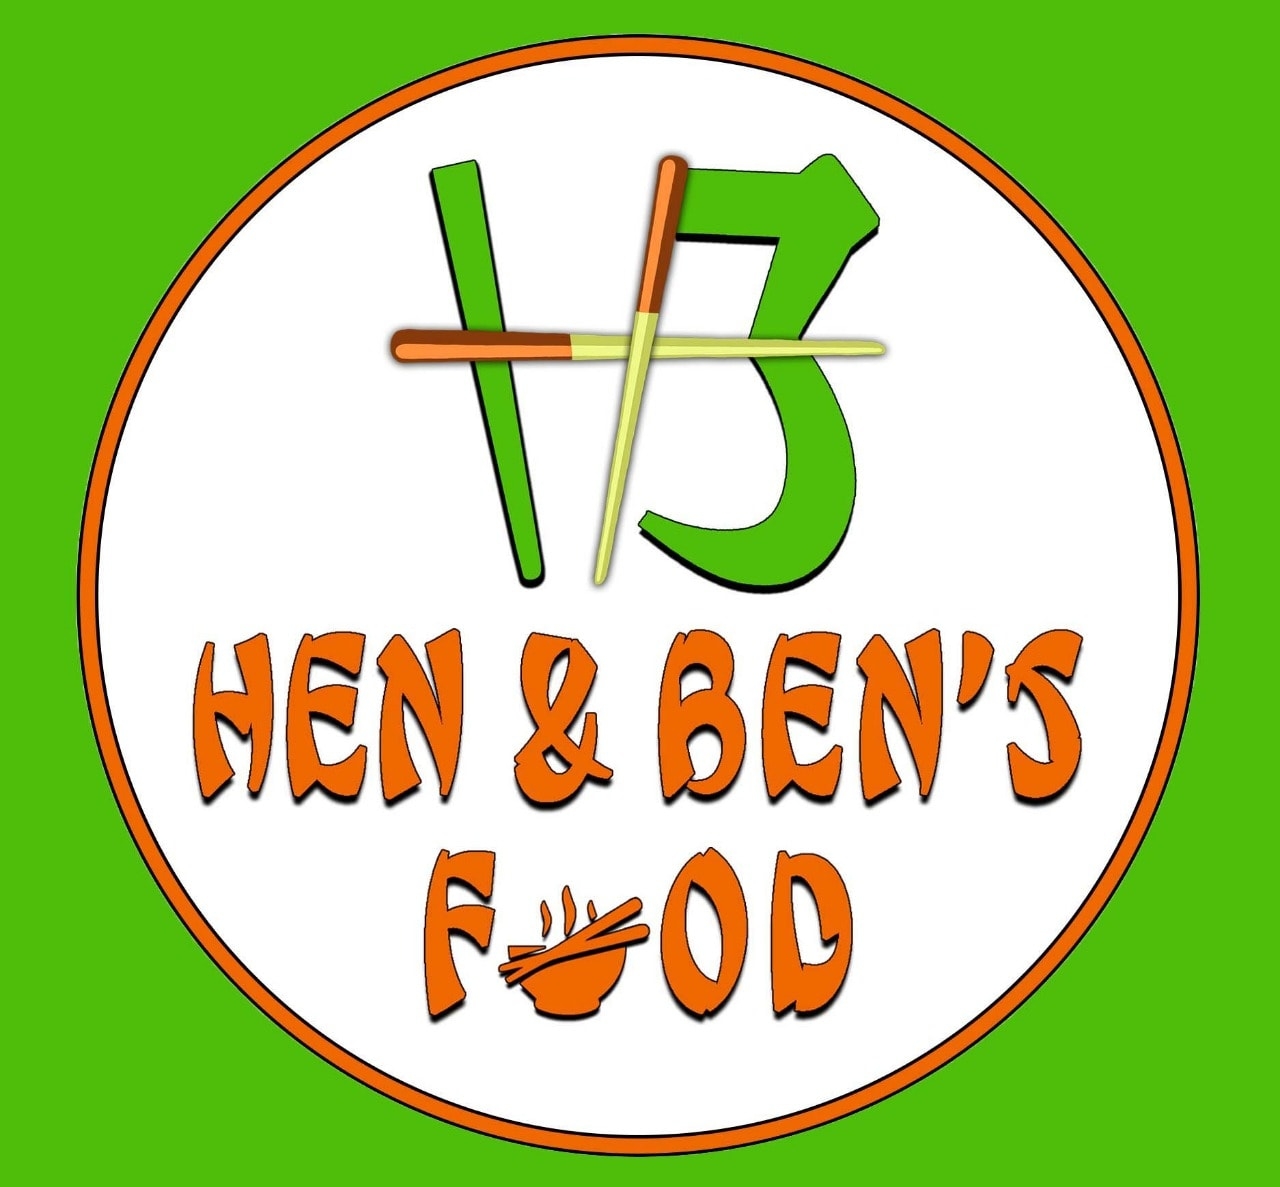 Hen & Ben's Food & Catering service